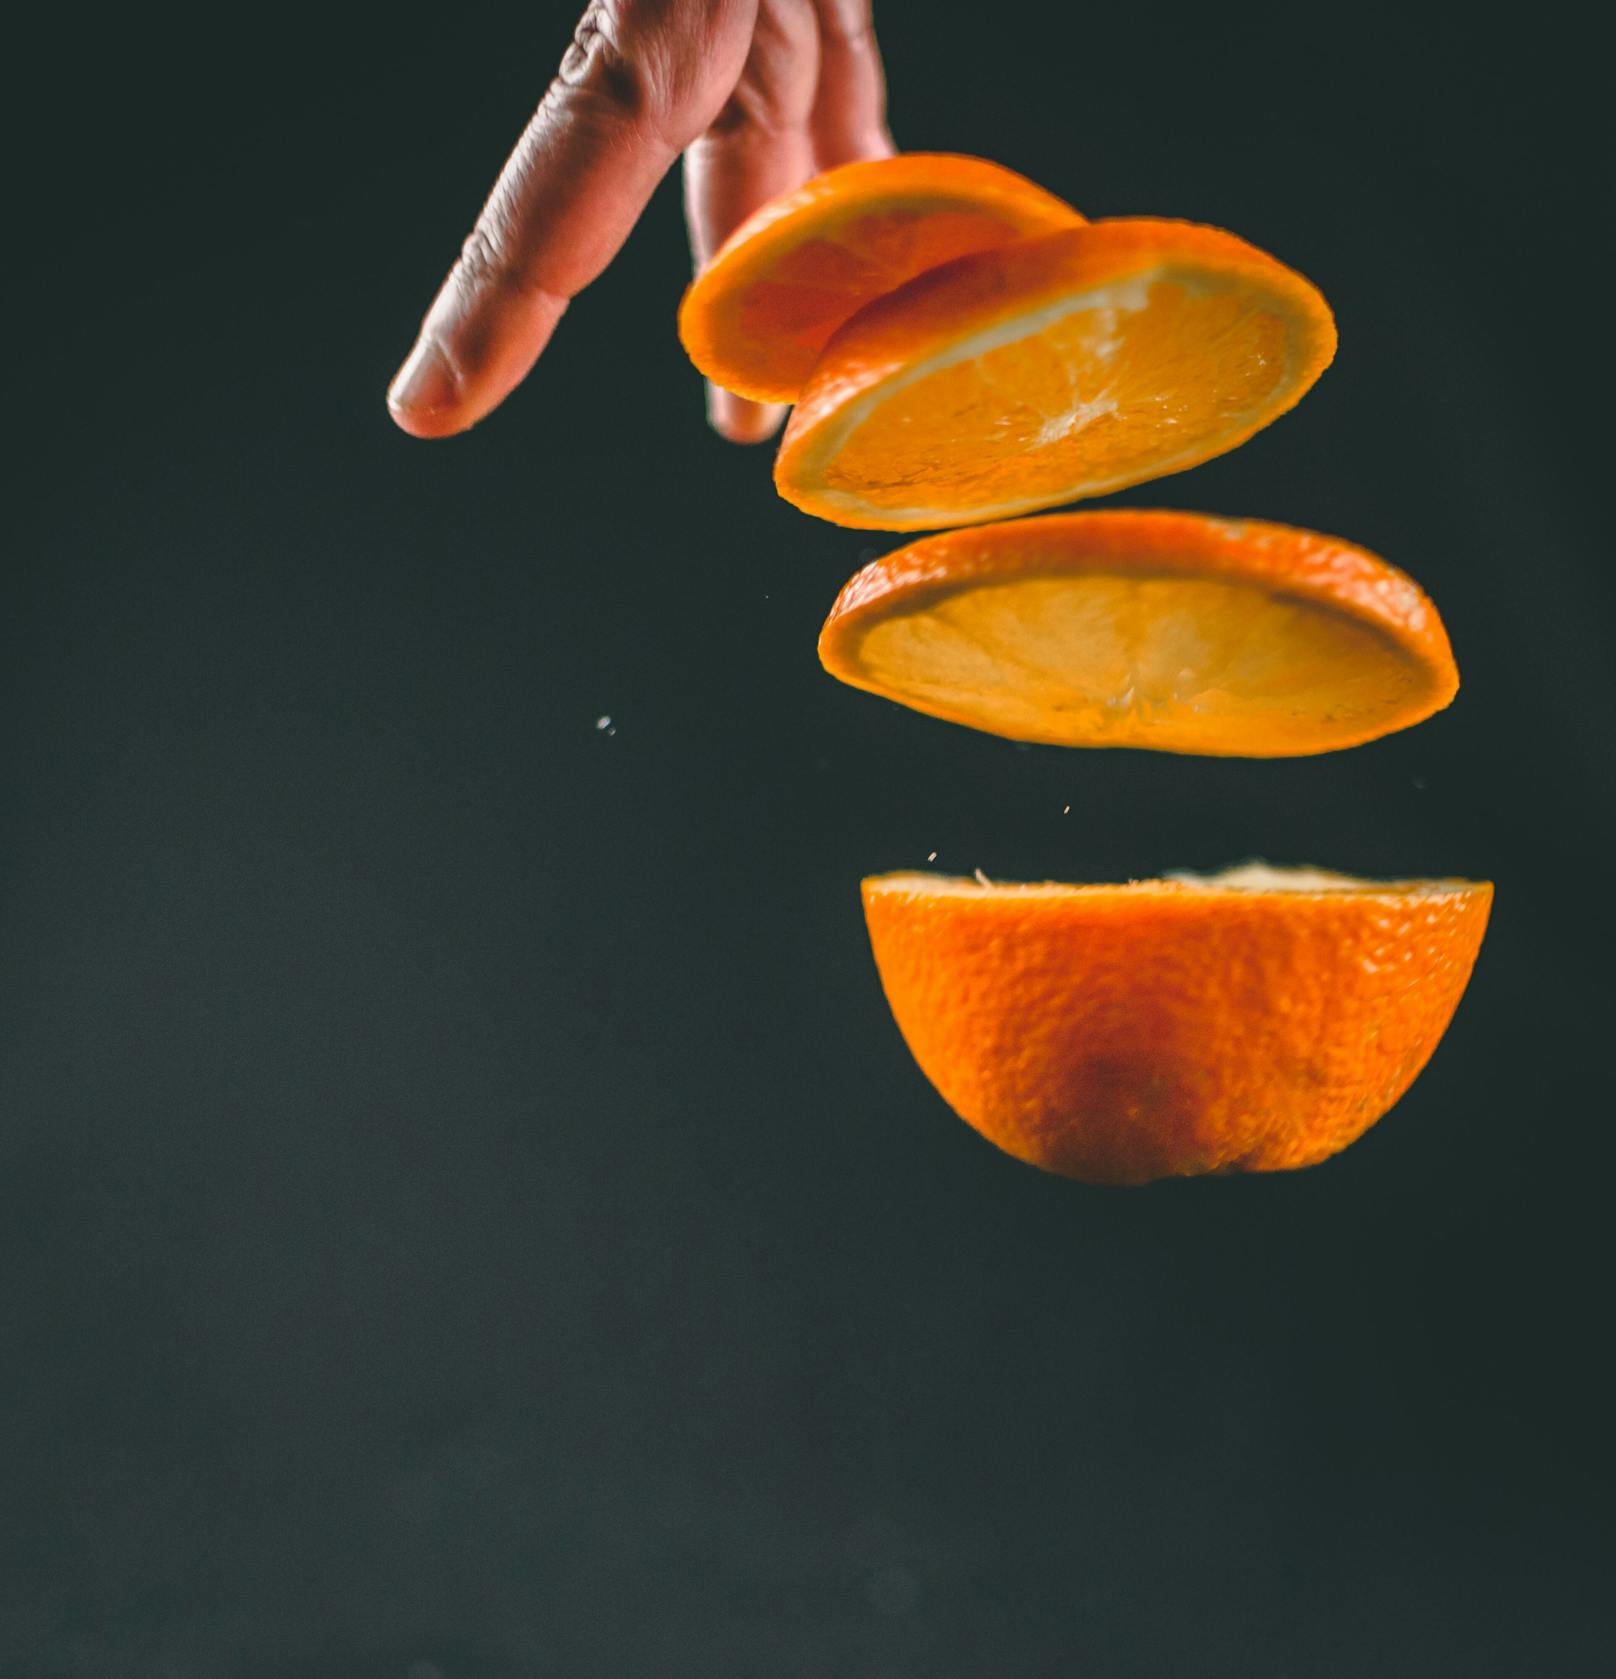 Alternativ, wenn du ein bisschen mehr Zeit hast, kannst du Zitronen- oder Orangenschalen ungefähr eine Woche im Essig einlegen und danach das Essig-Orangen-Gemisch zum Putzen nehmen. Voilà!&nbsp;